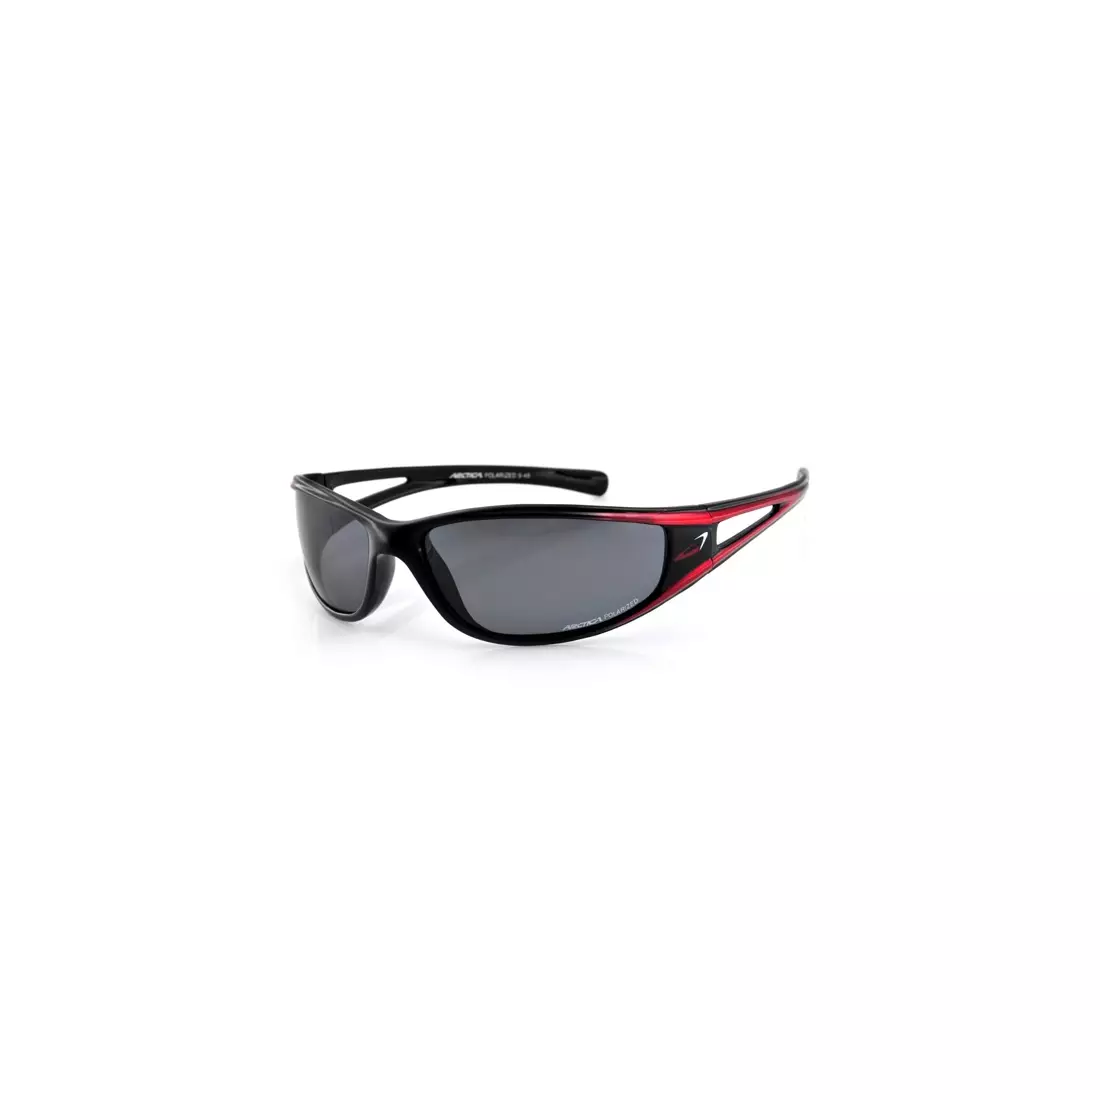 Športové okuliare ARCTICA S-49 - farba: Čierna a červená